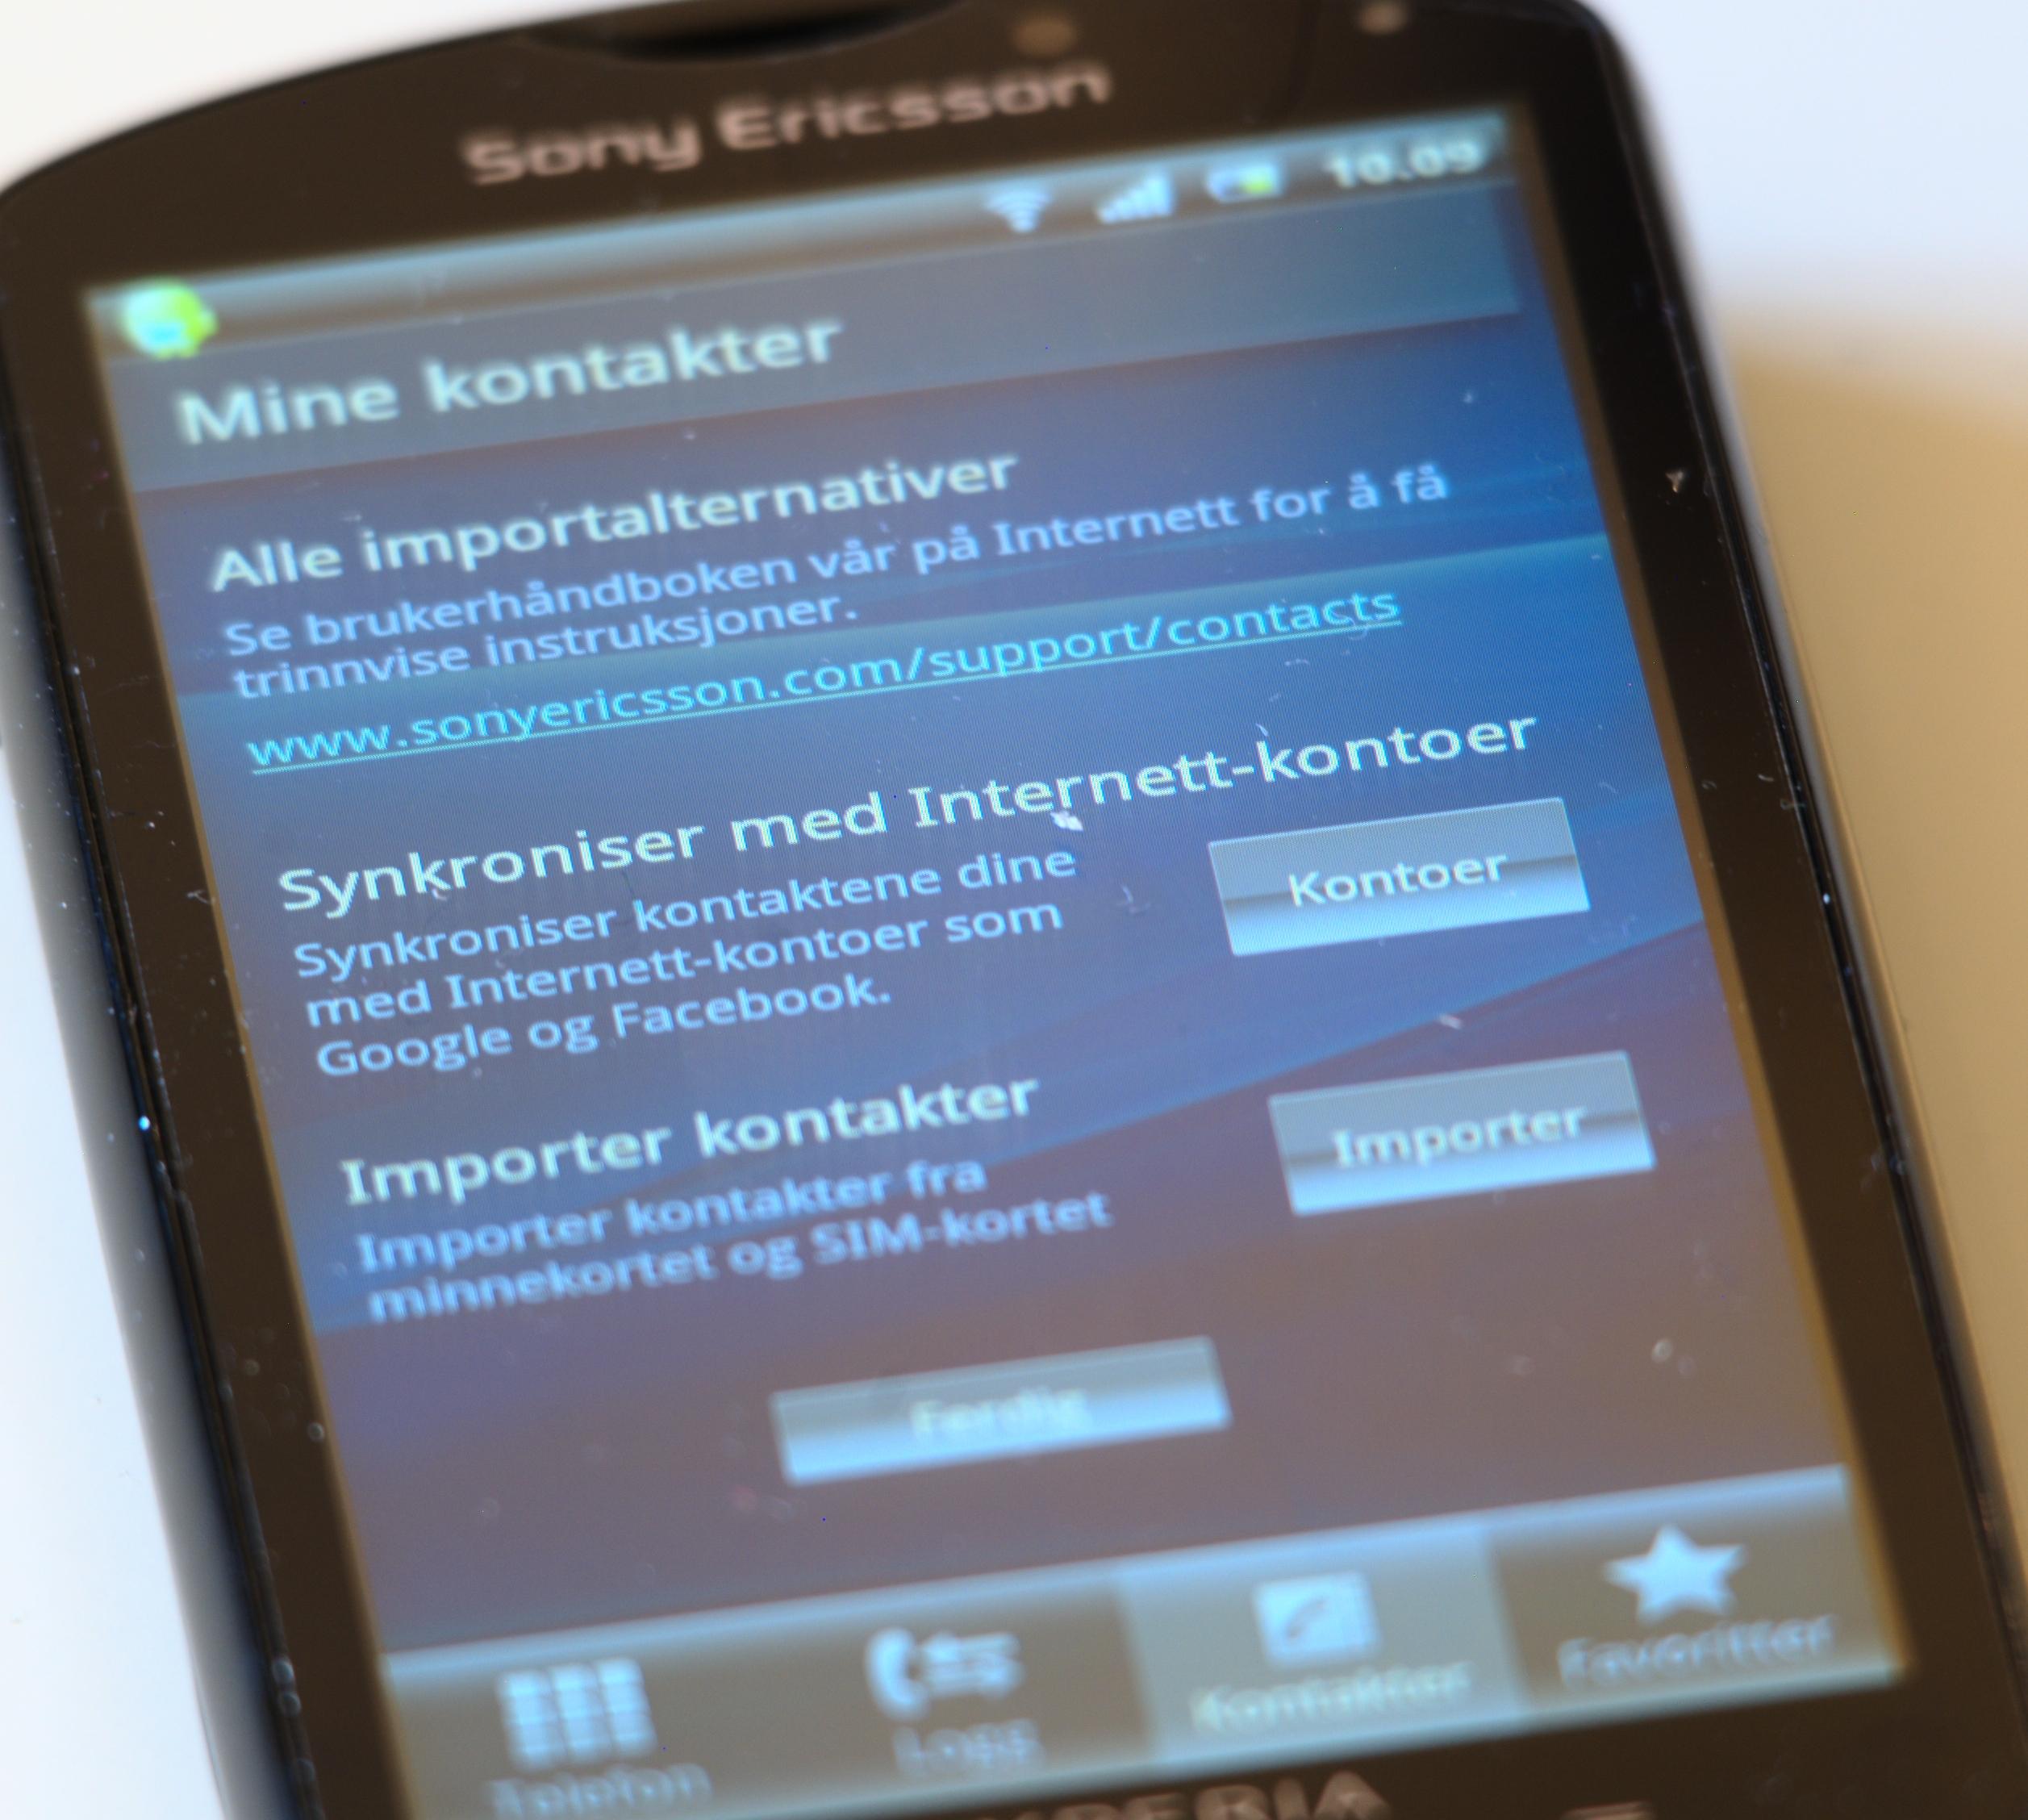 Kontaktlisten kan synkroniseres i alle retninger. (Foto: Einar Eriksen)